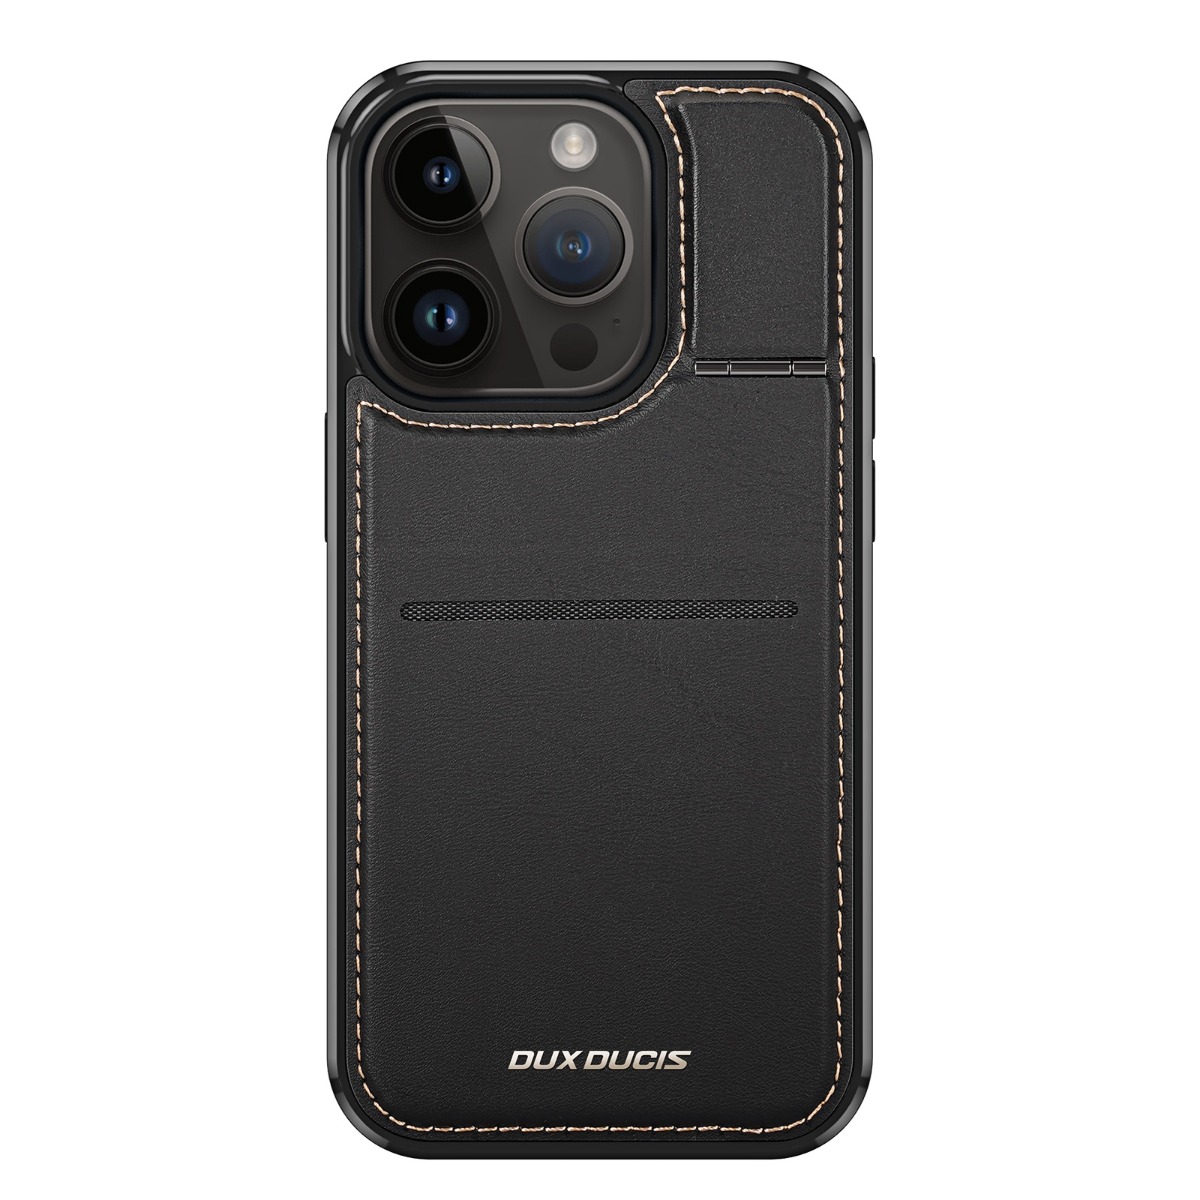 iPone 15 Pro Max Plus Magnetic Case